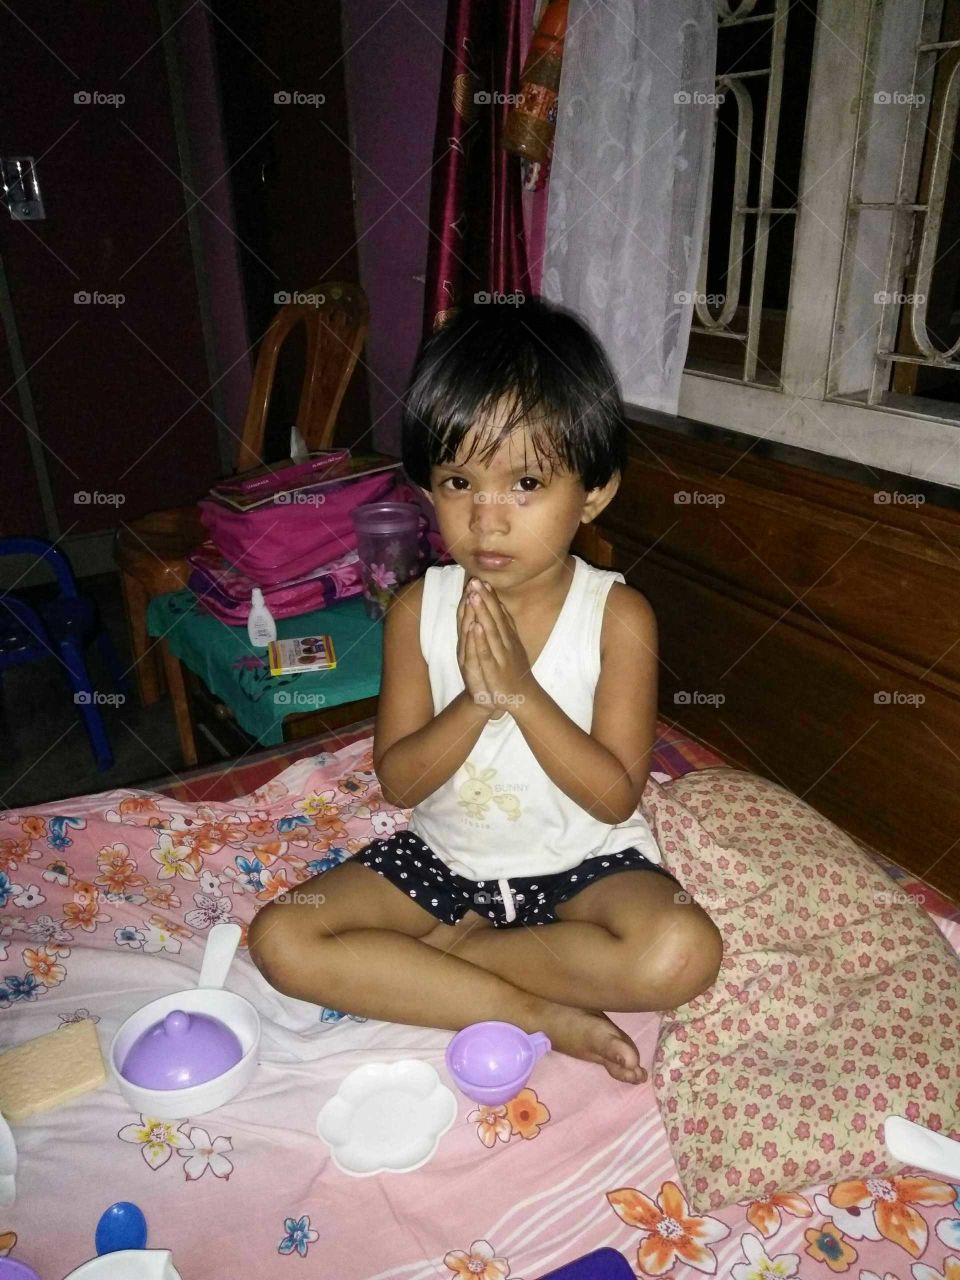 A child praying